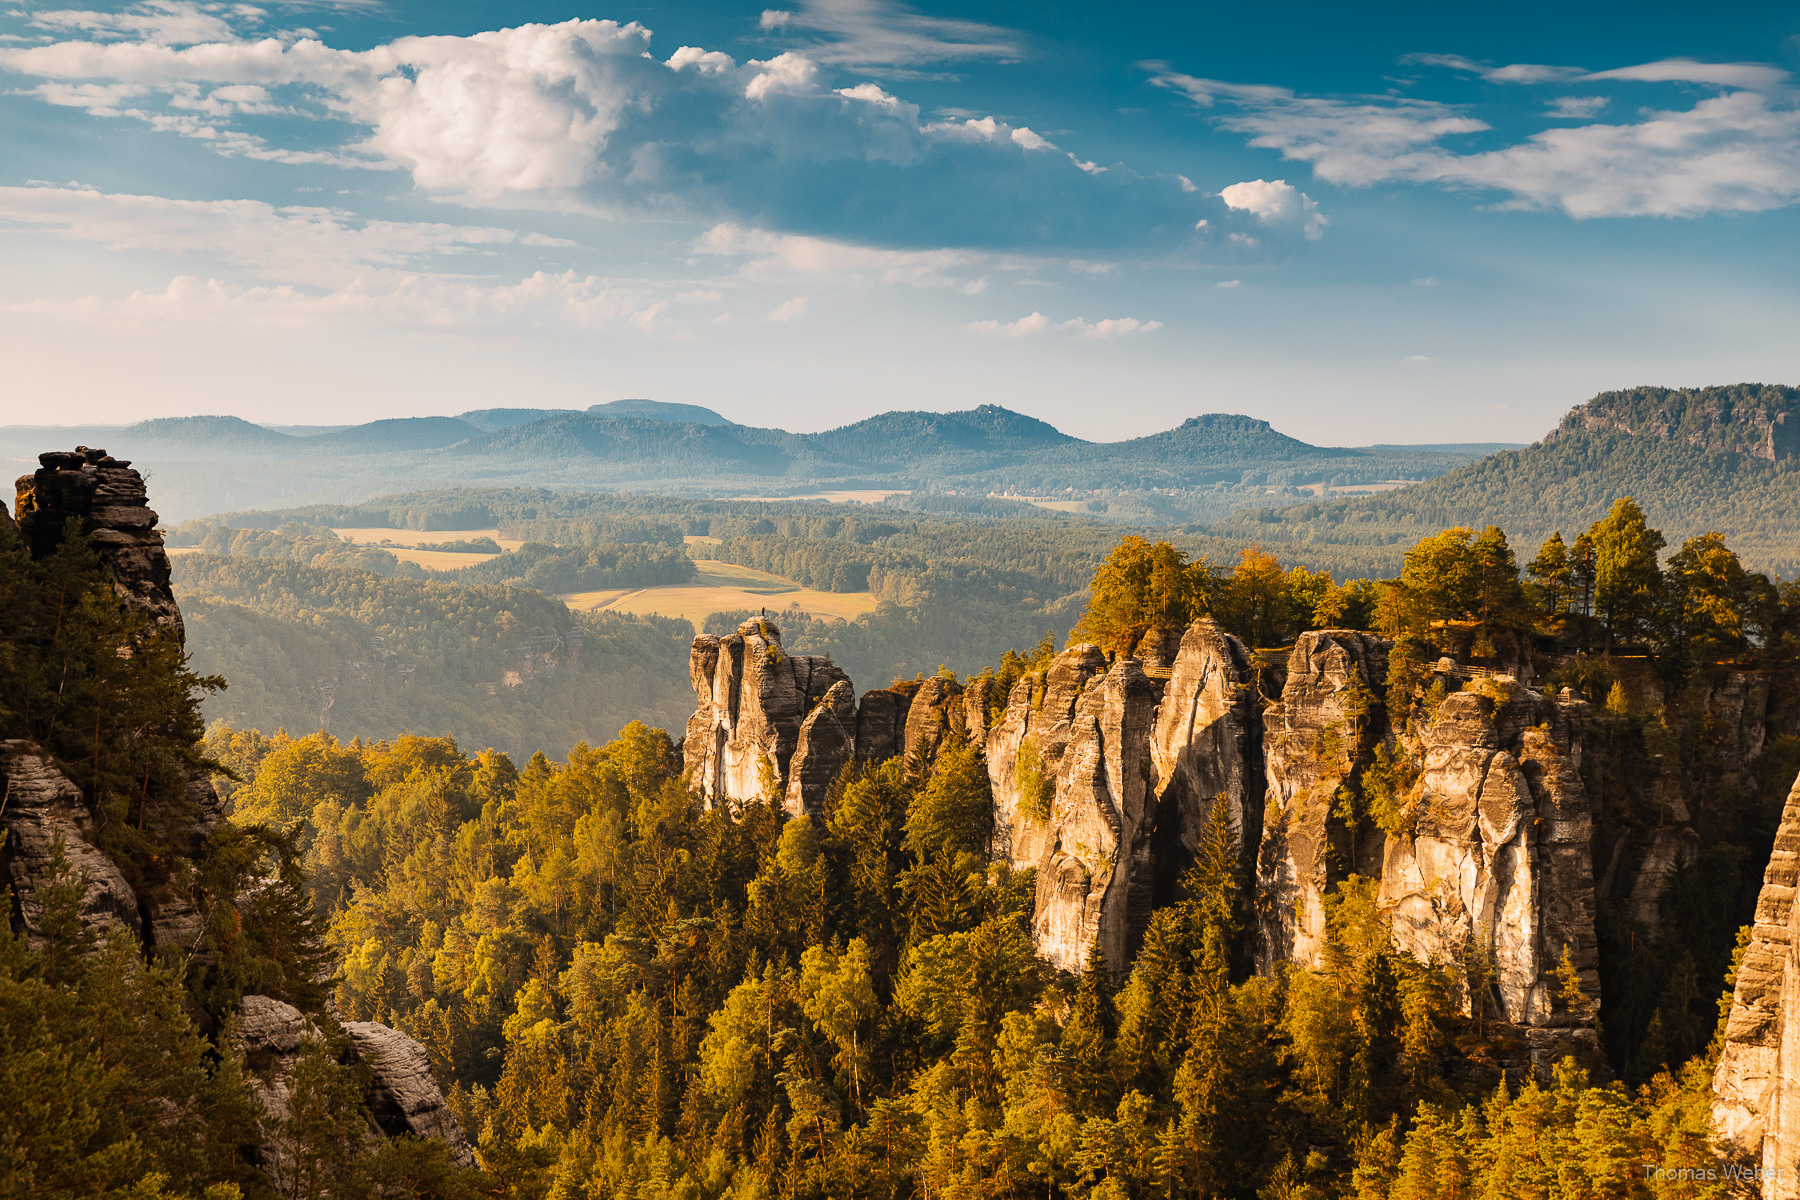 Landschaft im Elbsandsteingebirge, Fotograf Thomas Weber aus Oldenburg